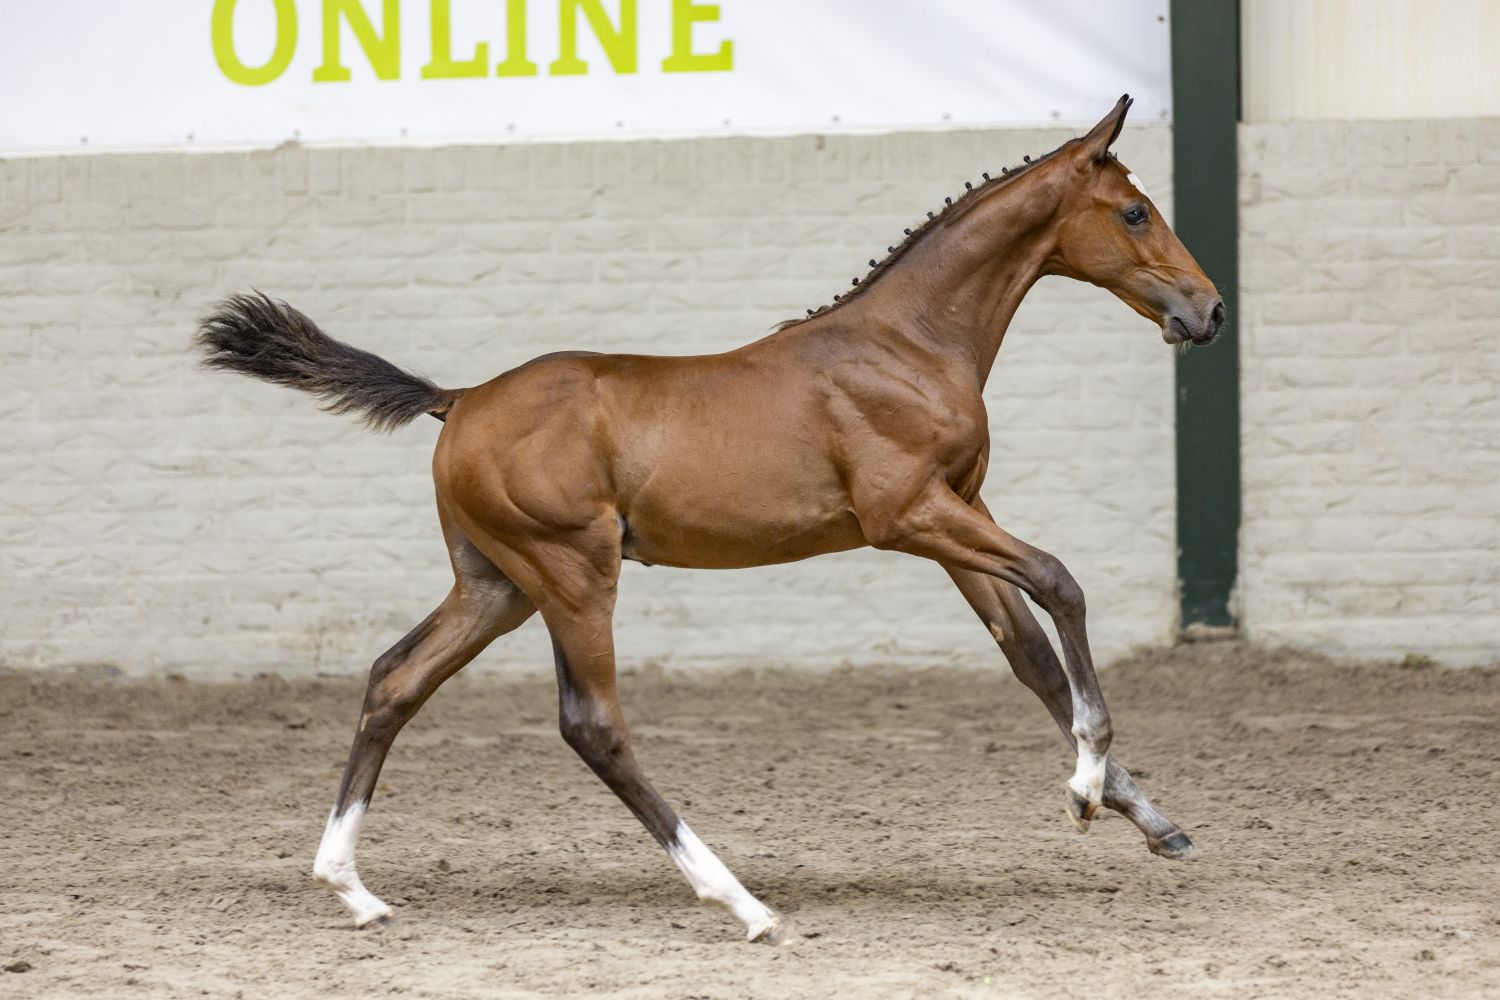 Veilingtopper paardenveilingenonline.com blijft voor 17.500 euro in Nederland